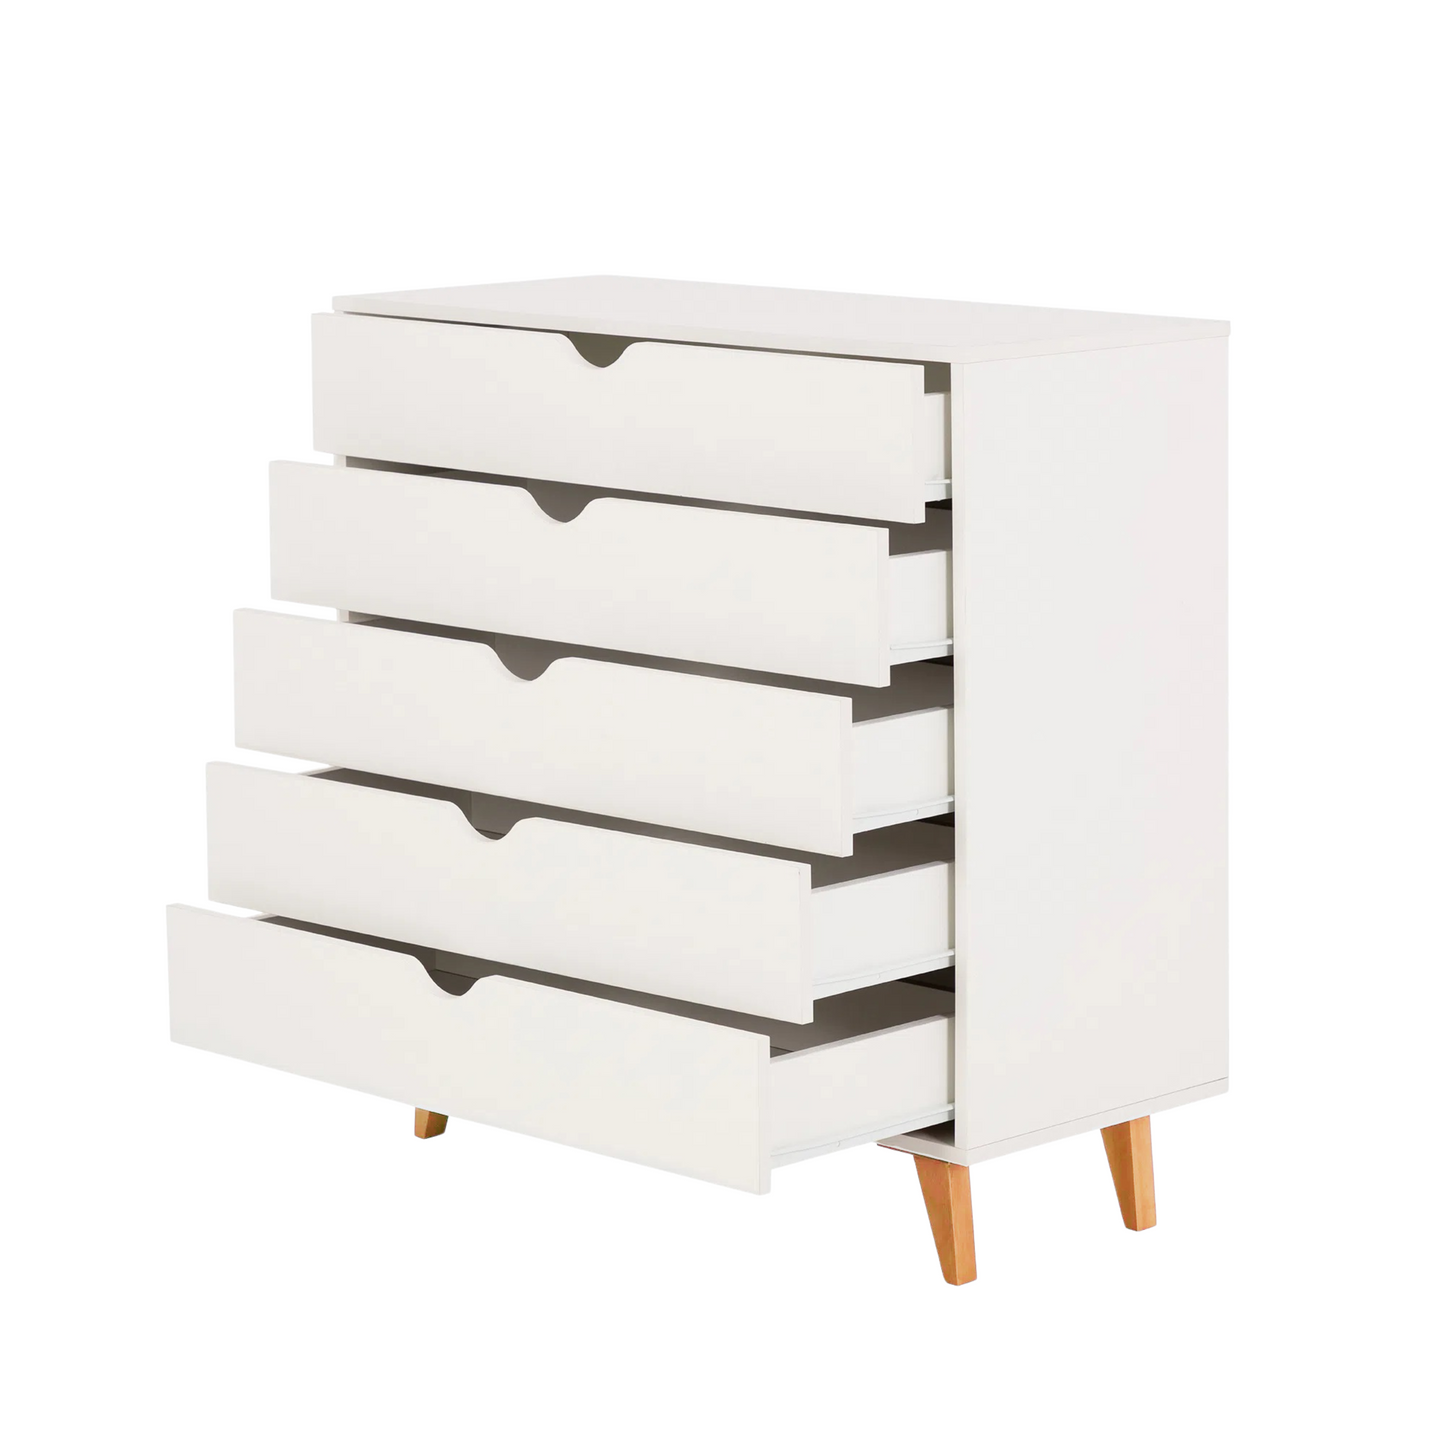 IPANEMA 5-Drawer Dresser White